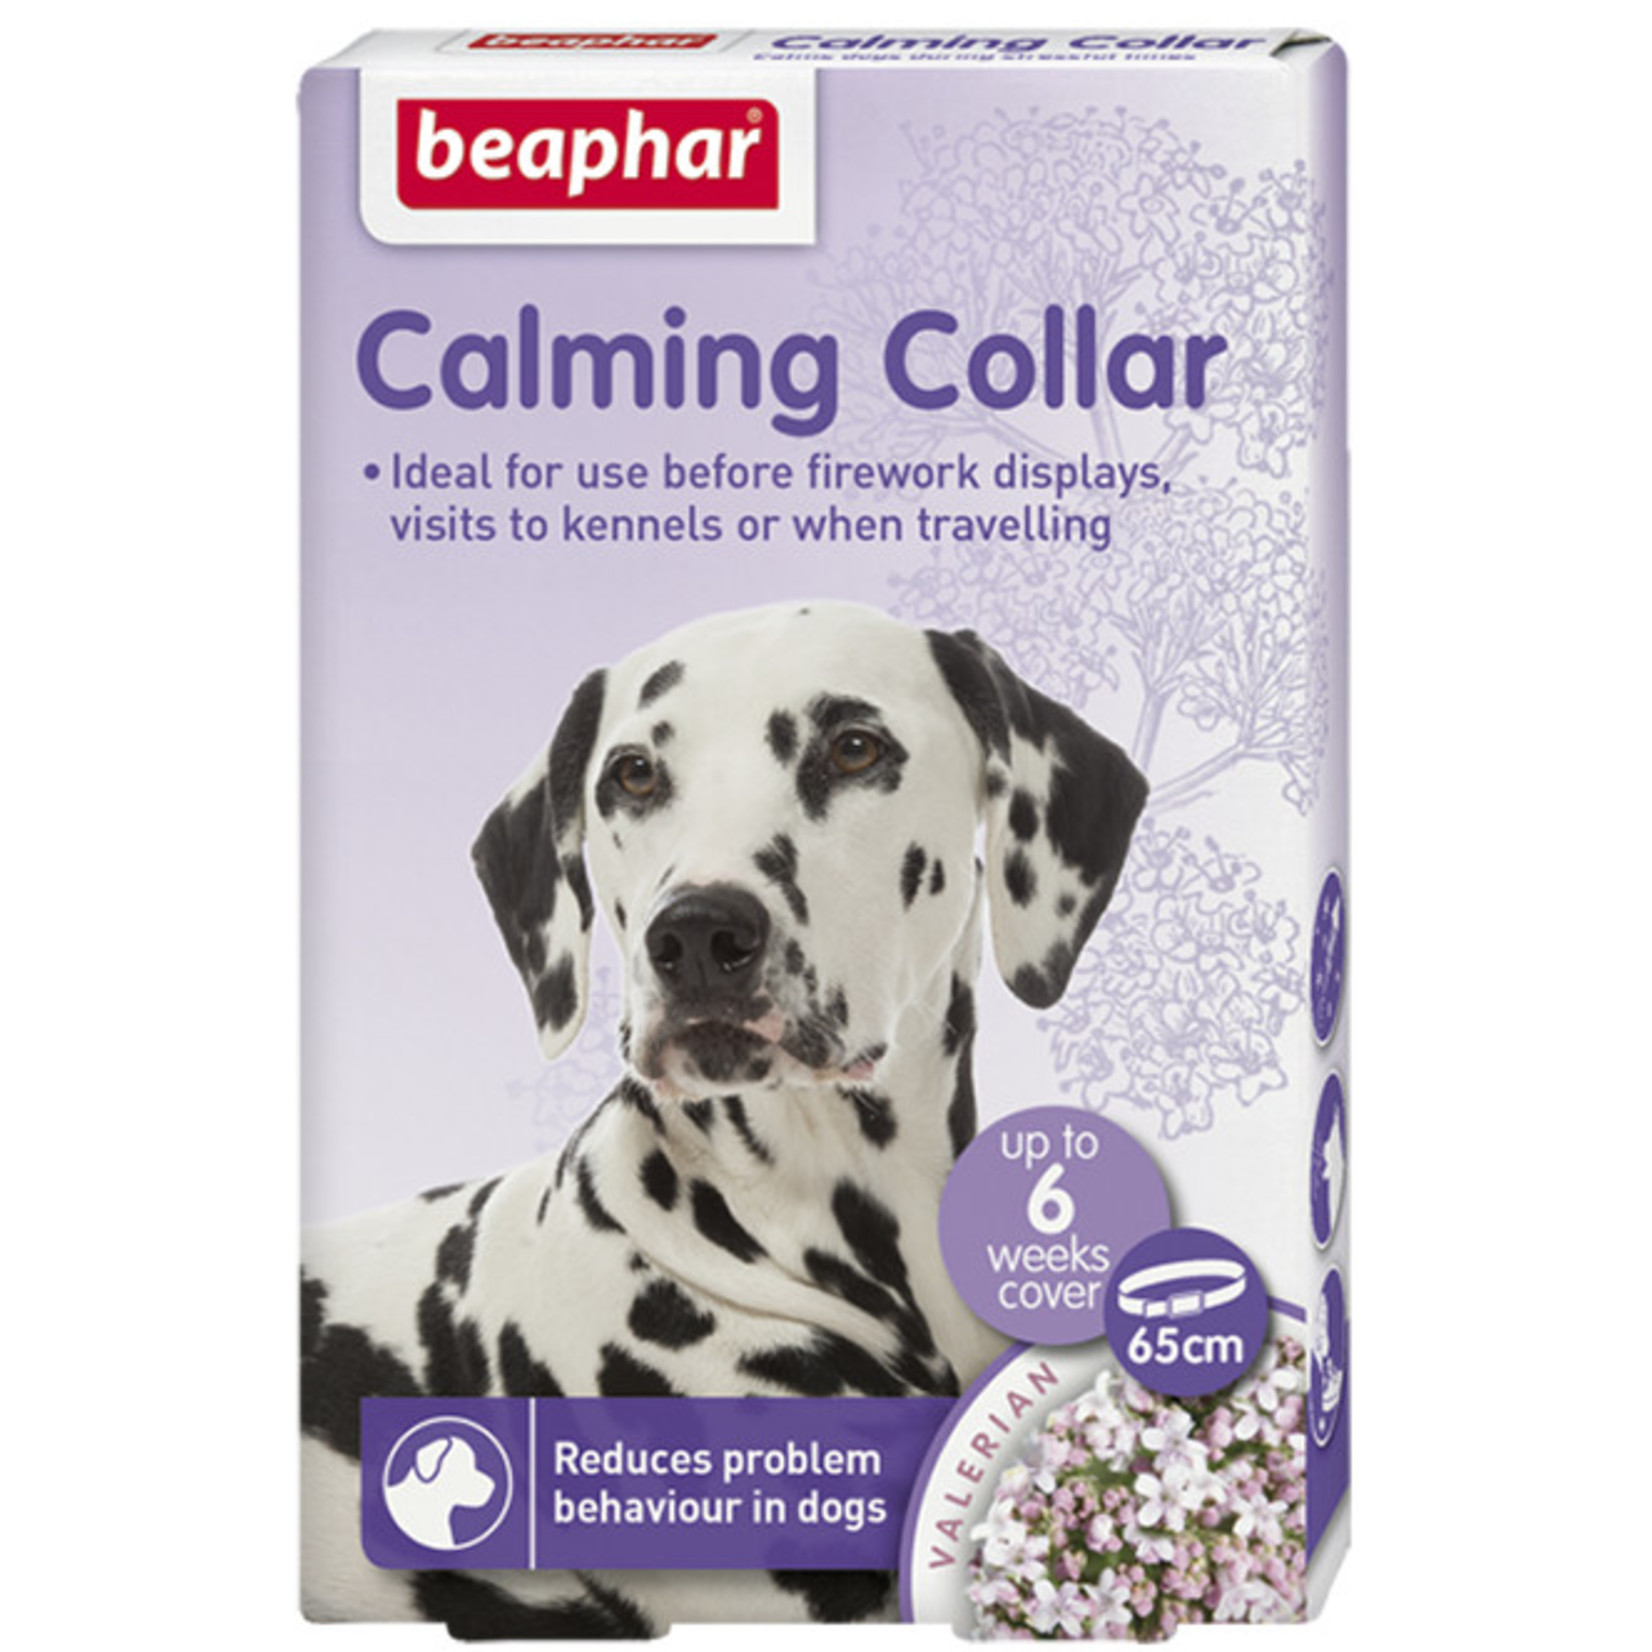 Beaphar Calming Collar for Dogs, 65cm